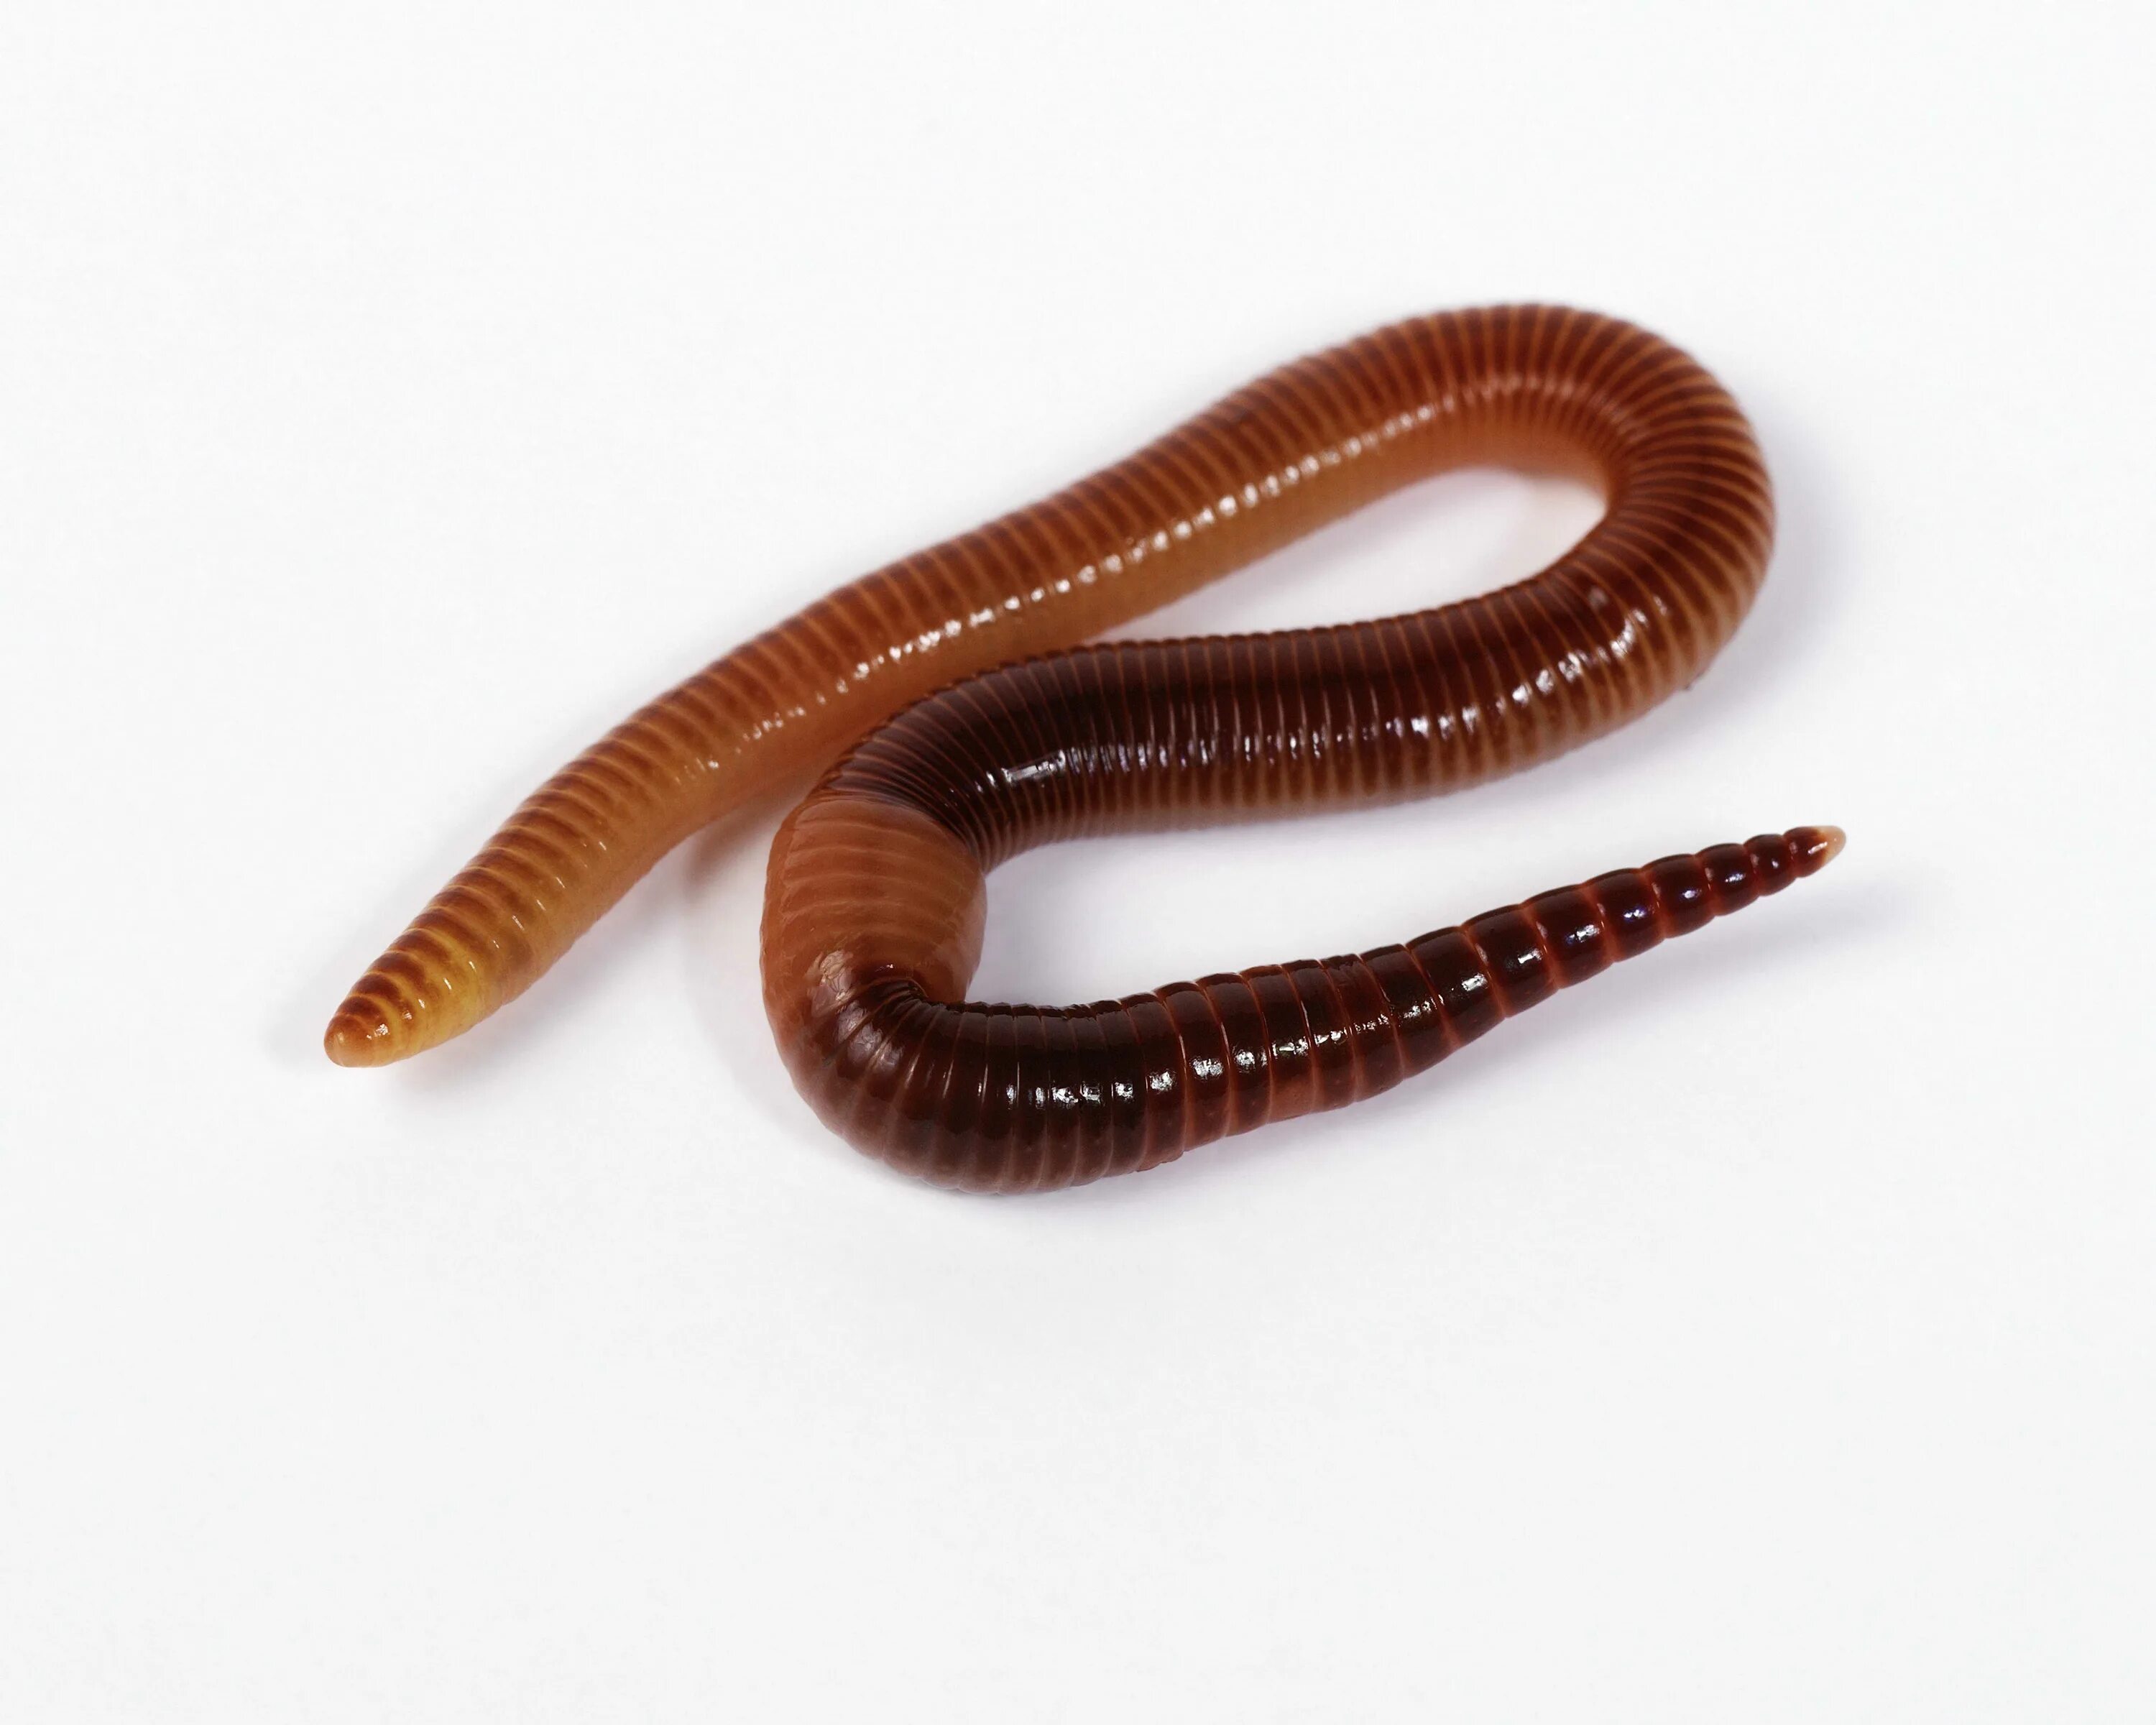 Новые черви. Малощетинковые дождевой червь. Земляные черви кольчатые червь. Кольчатые черви Малощетинковые дождевой червь.